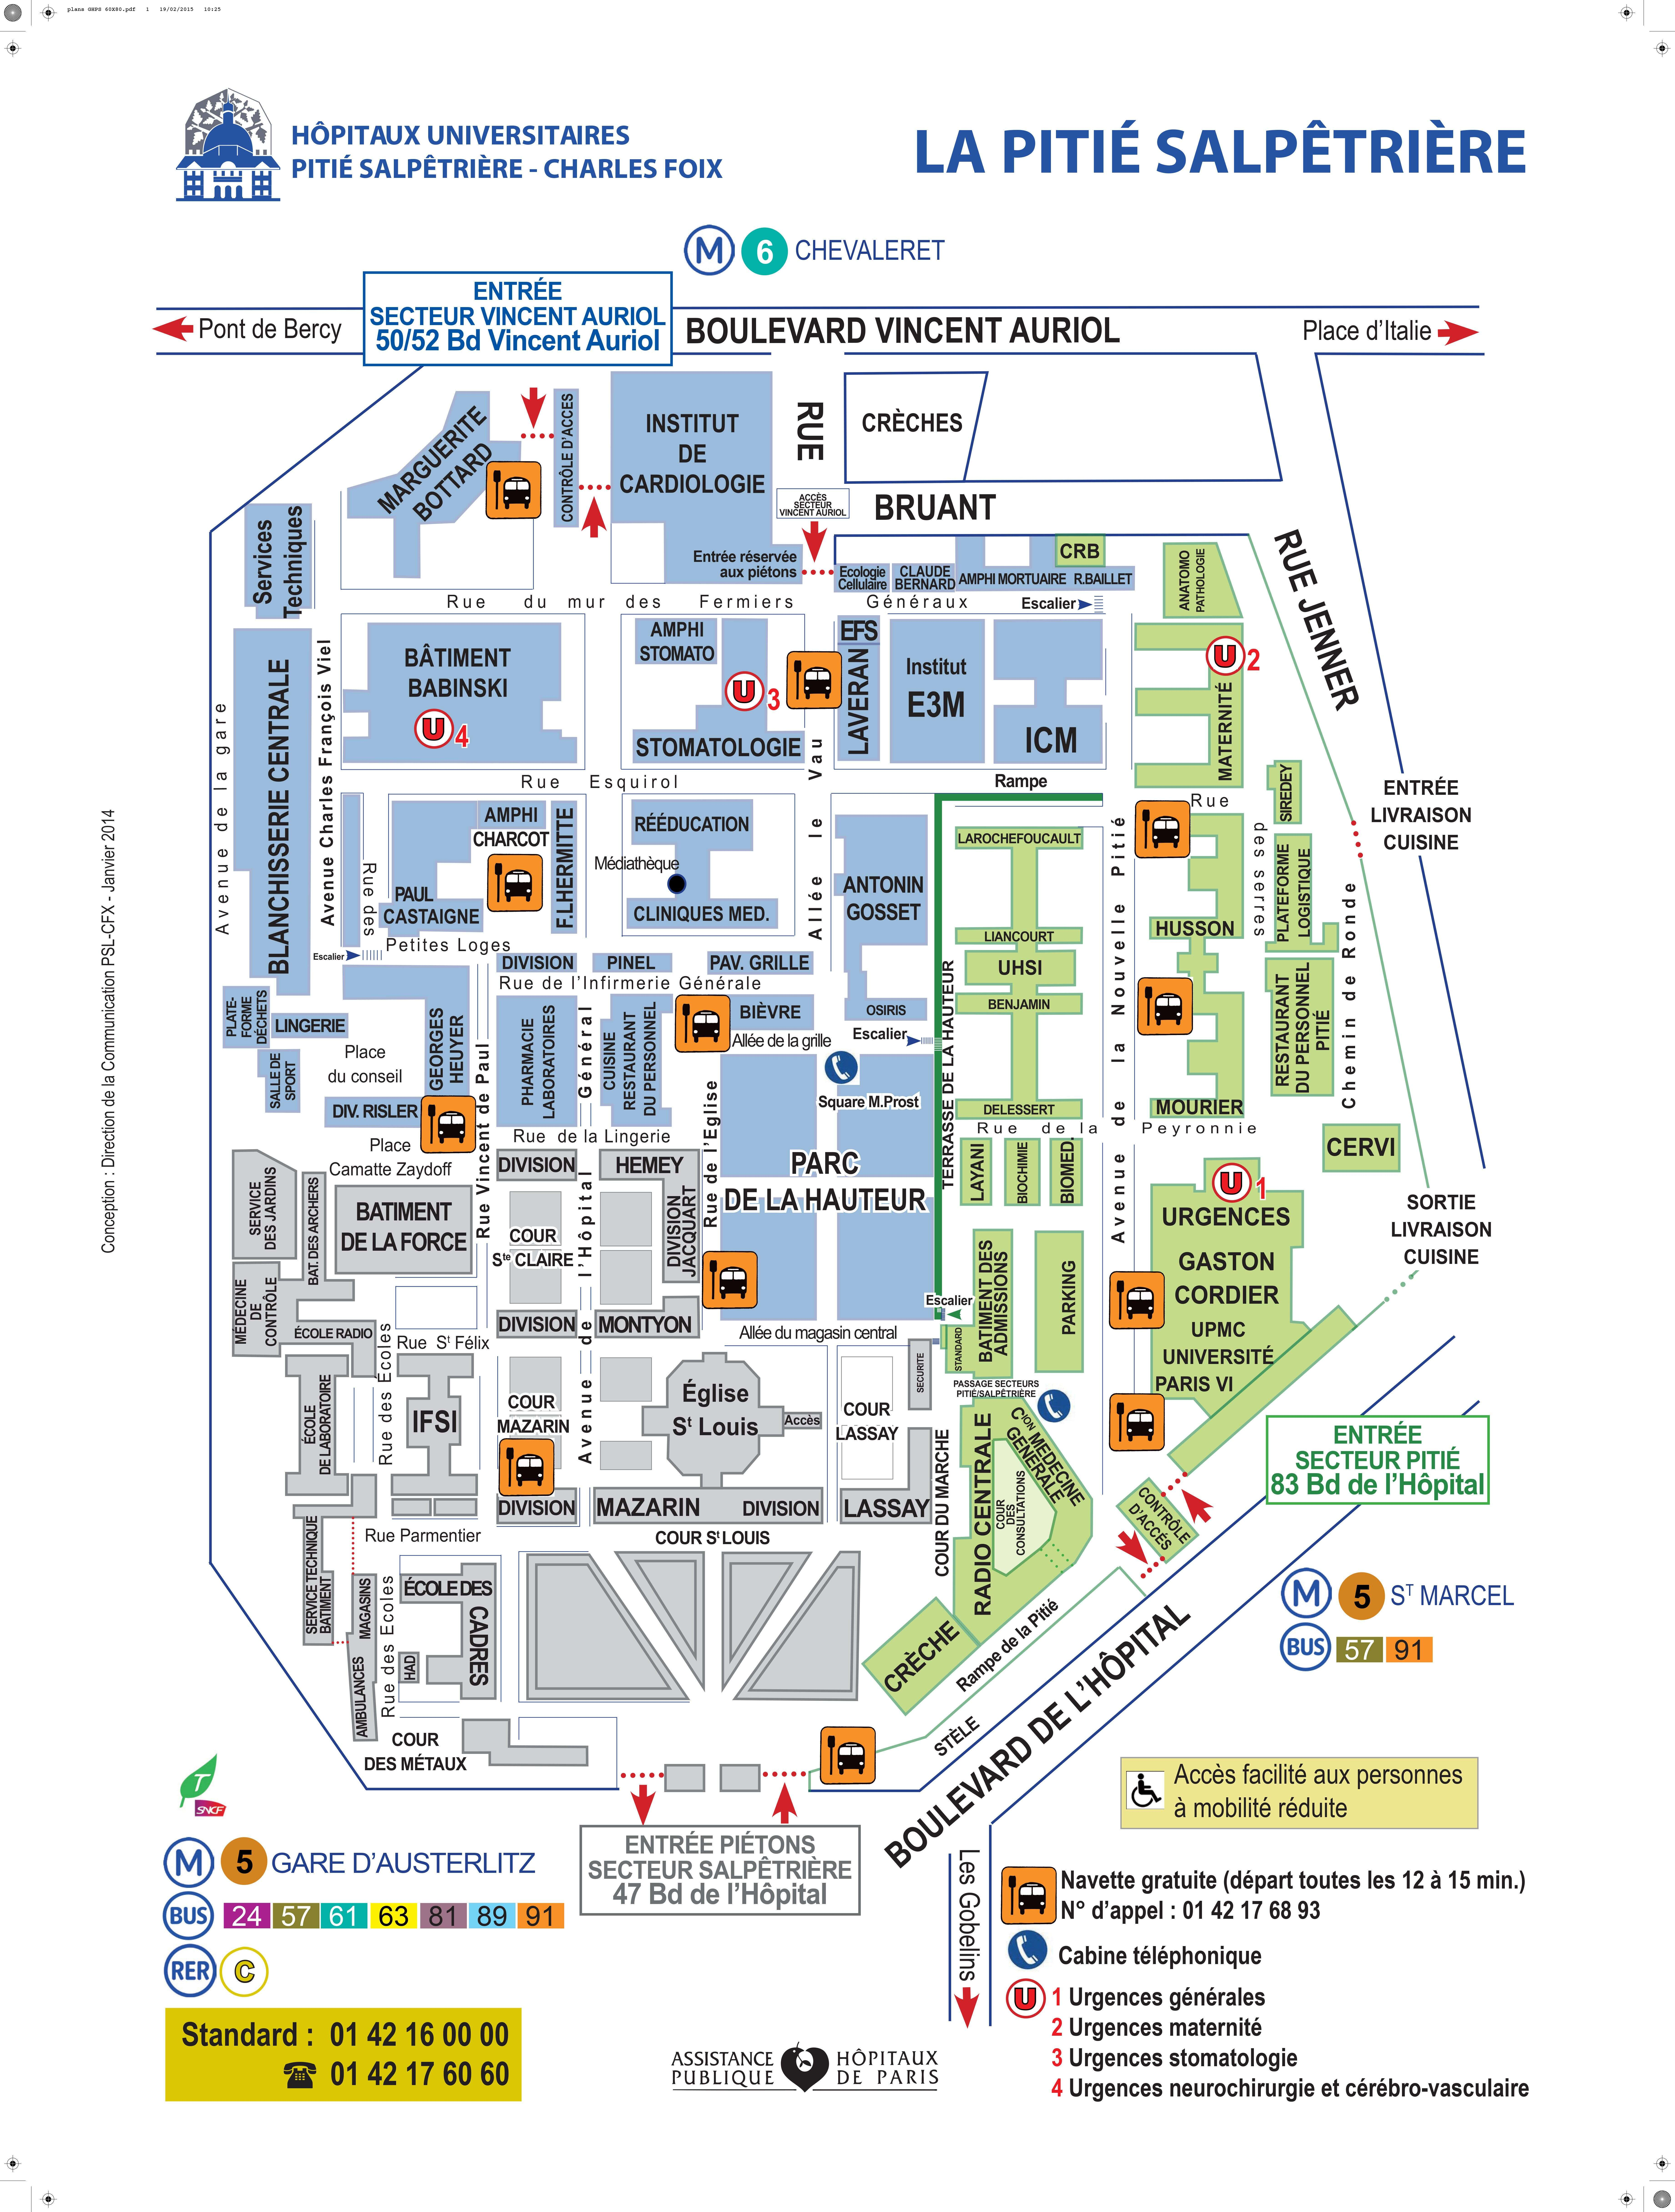 Le plan officiel du site de l'hôpital universitaire de la Pitié-Salpêtrière.